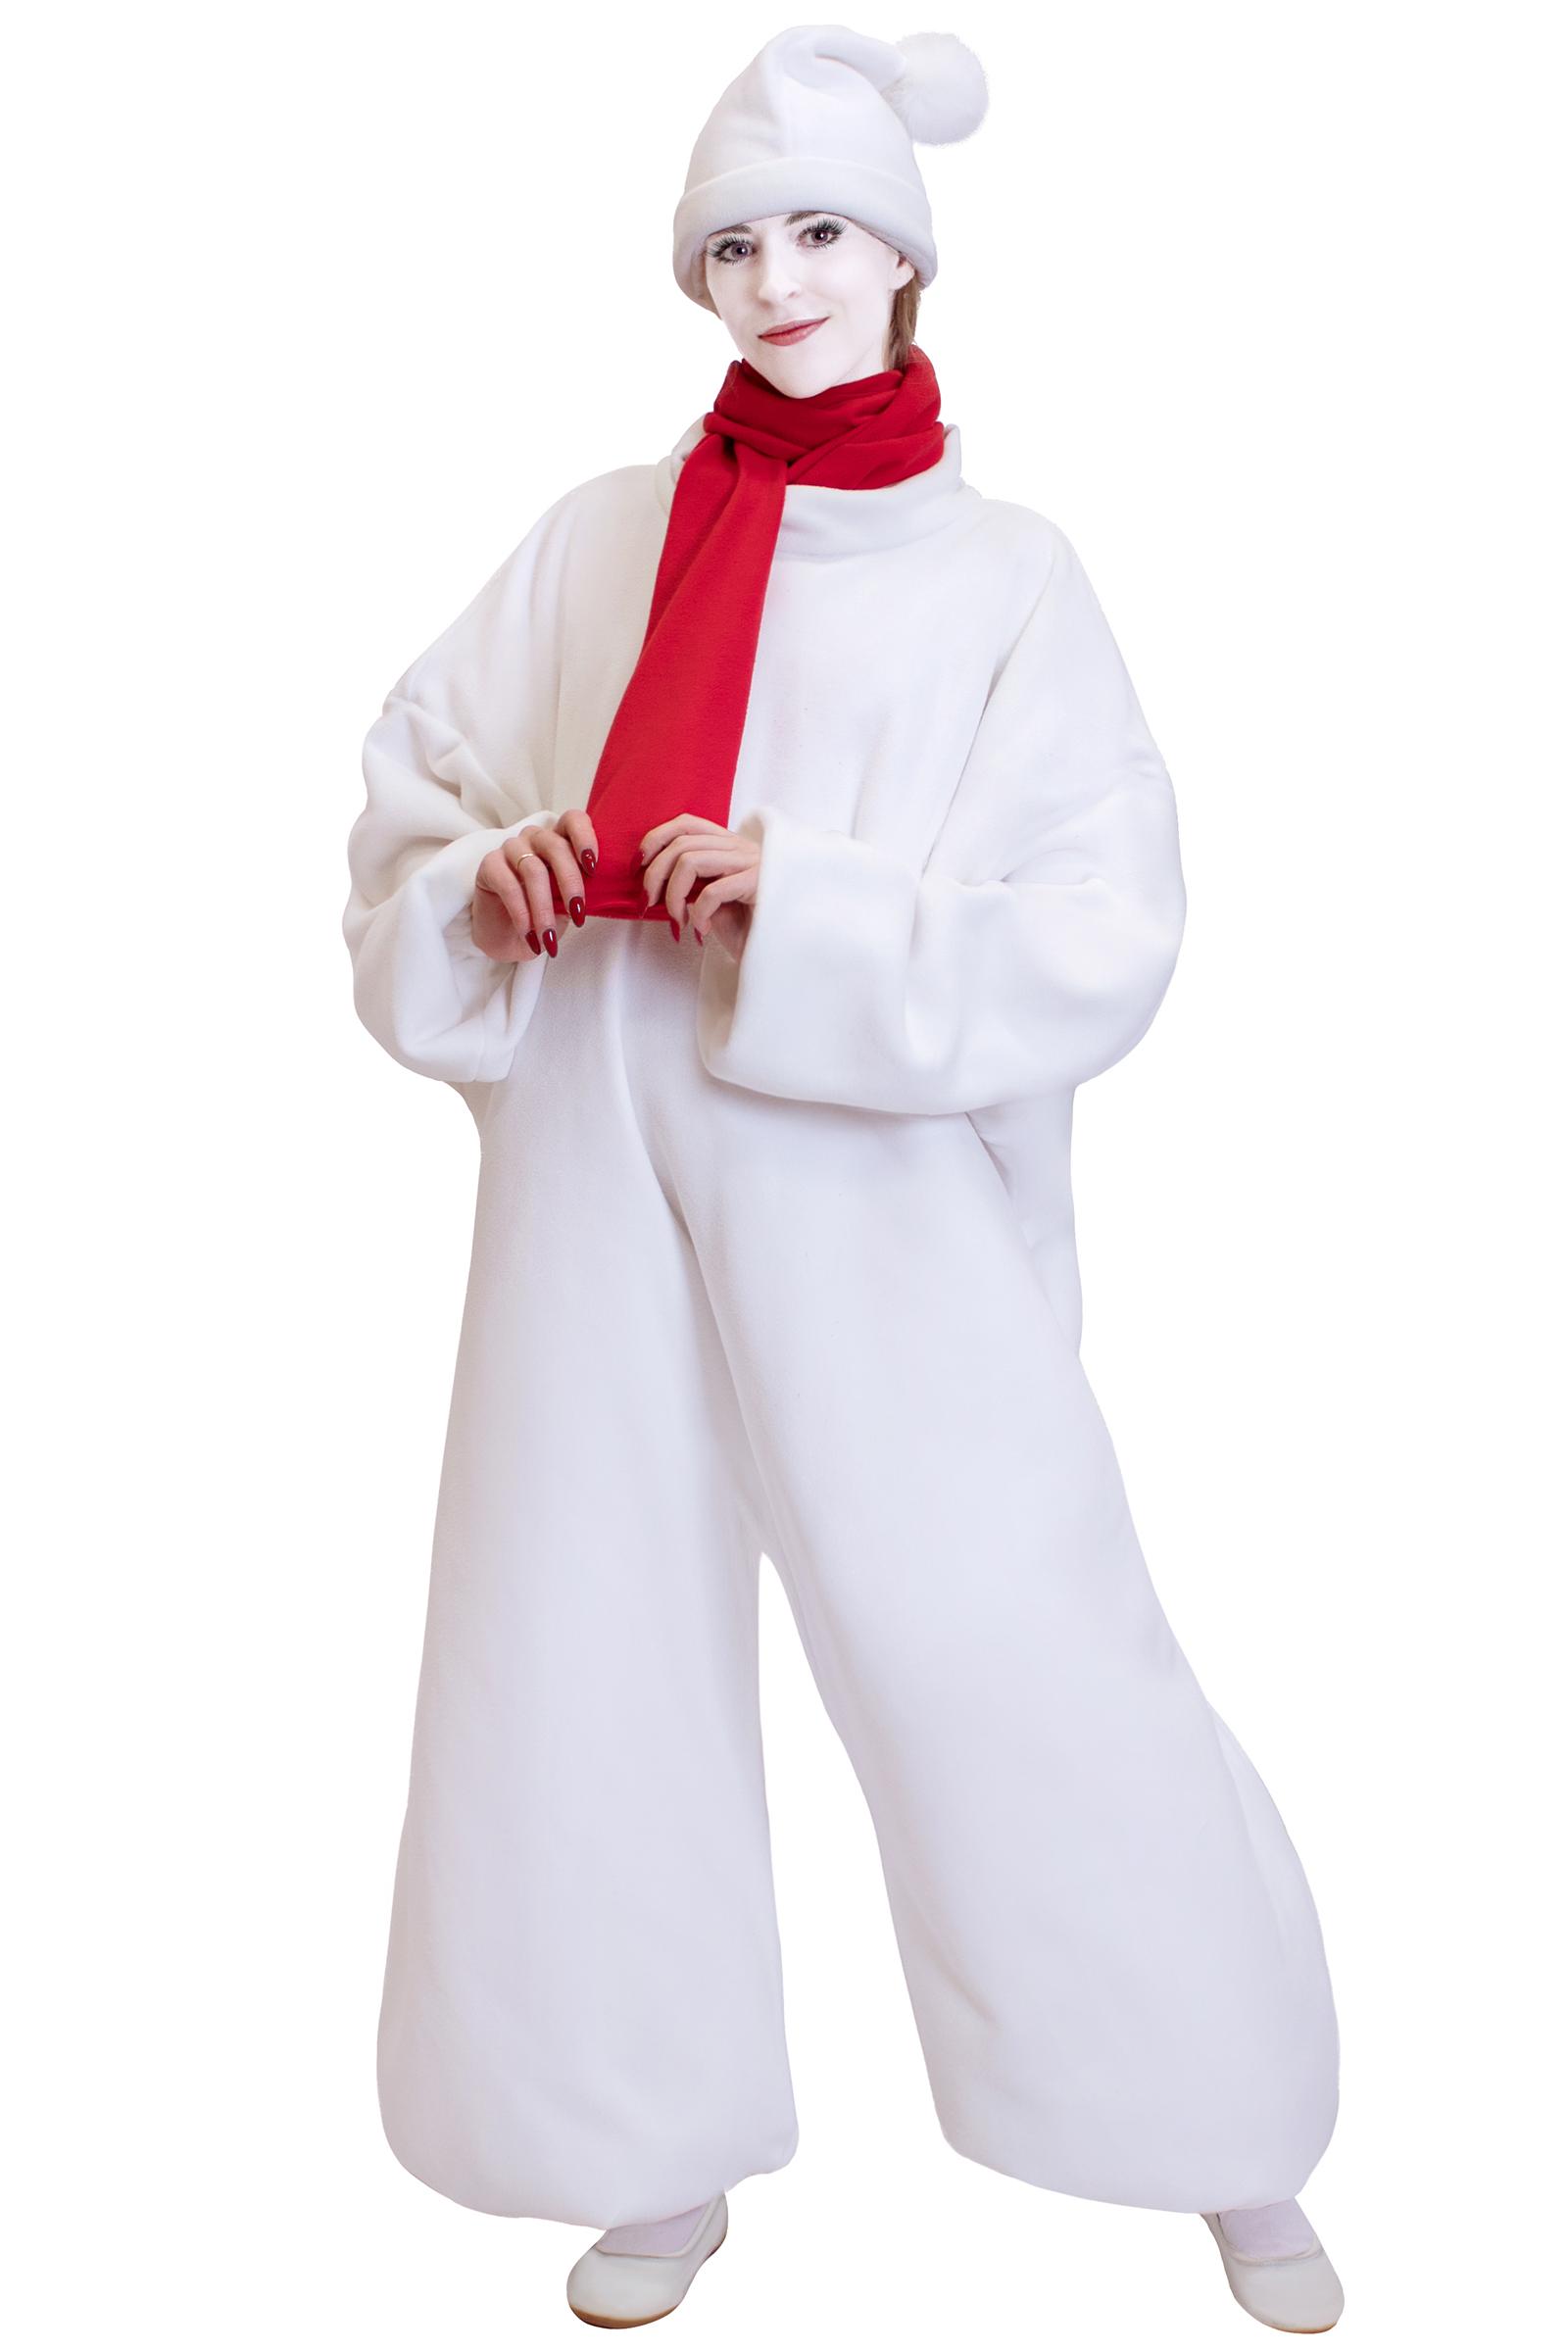 Новогодний костюм Снеговик купить недорого в Санкт-Петербурге: интернет-магазин АРЛЕКИН